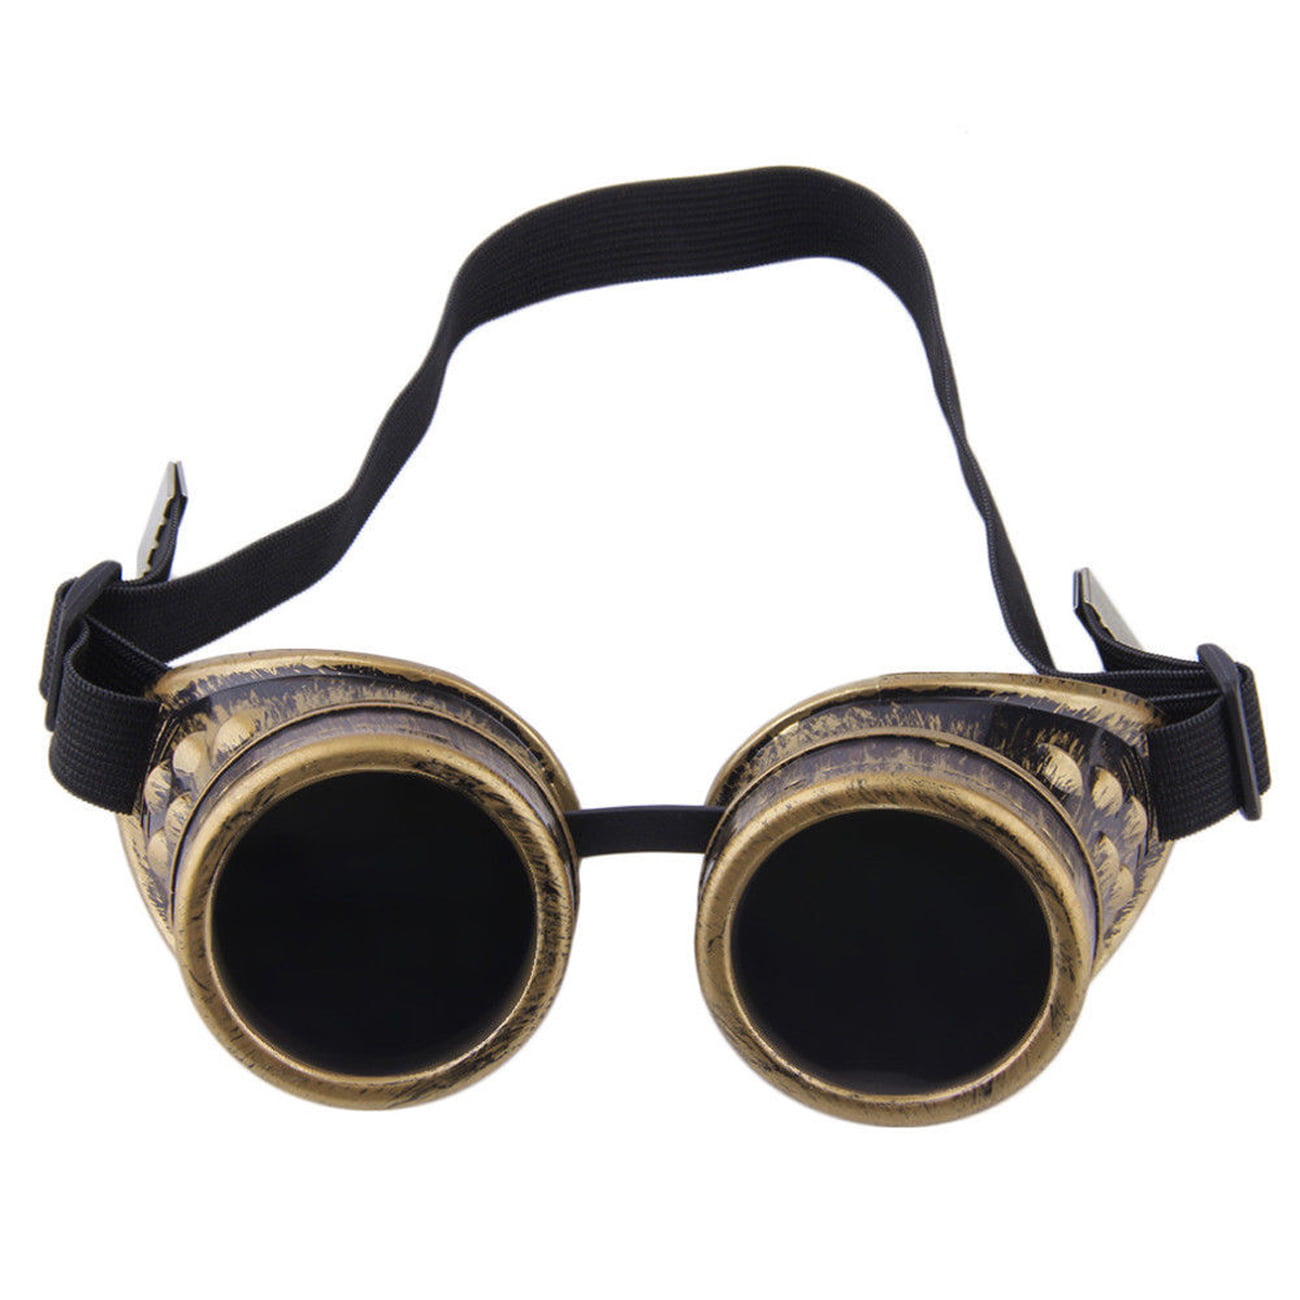 MFAZ Morefaz Ltd Cyber De Soleil des Lunettes de Soudage Welding Goggles LED Steampunk Antique Cosplay Sunglasses Round Glasses Party Fancy Dress Design 1 Gold